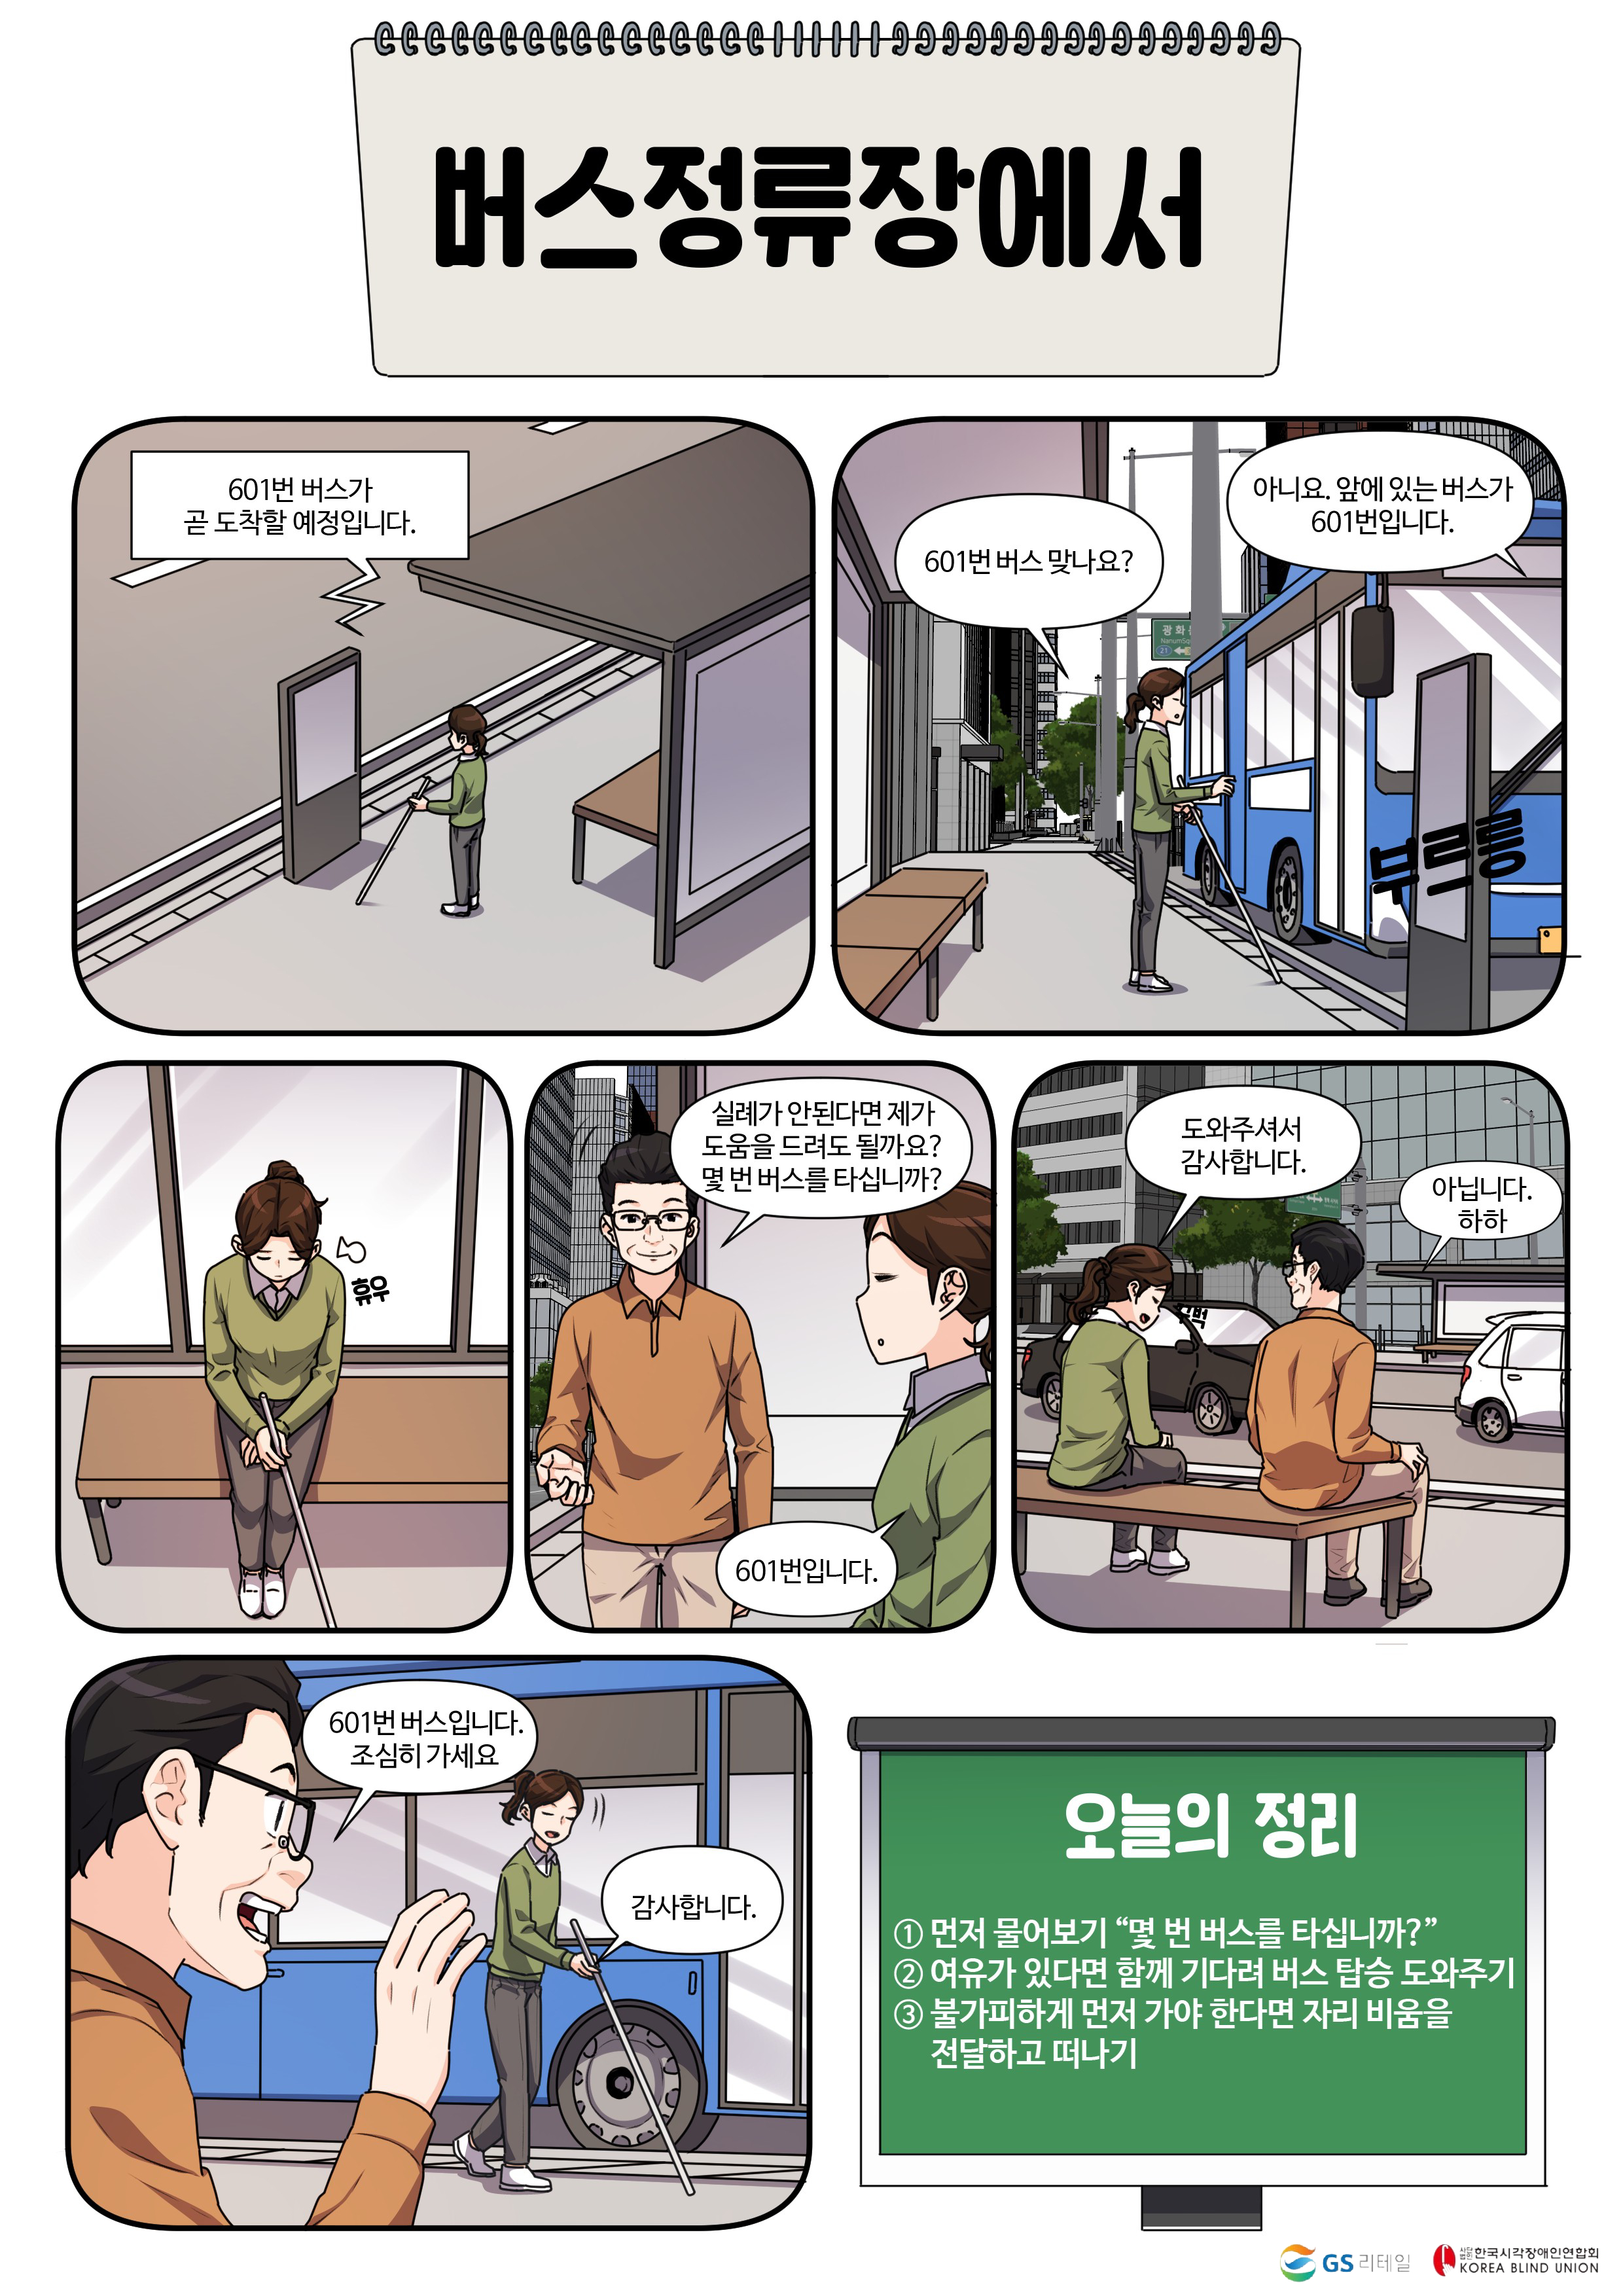 시각장애인의 이해 교육웹툰 4화 - 버스정류장에서1